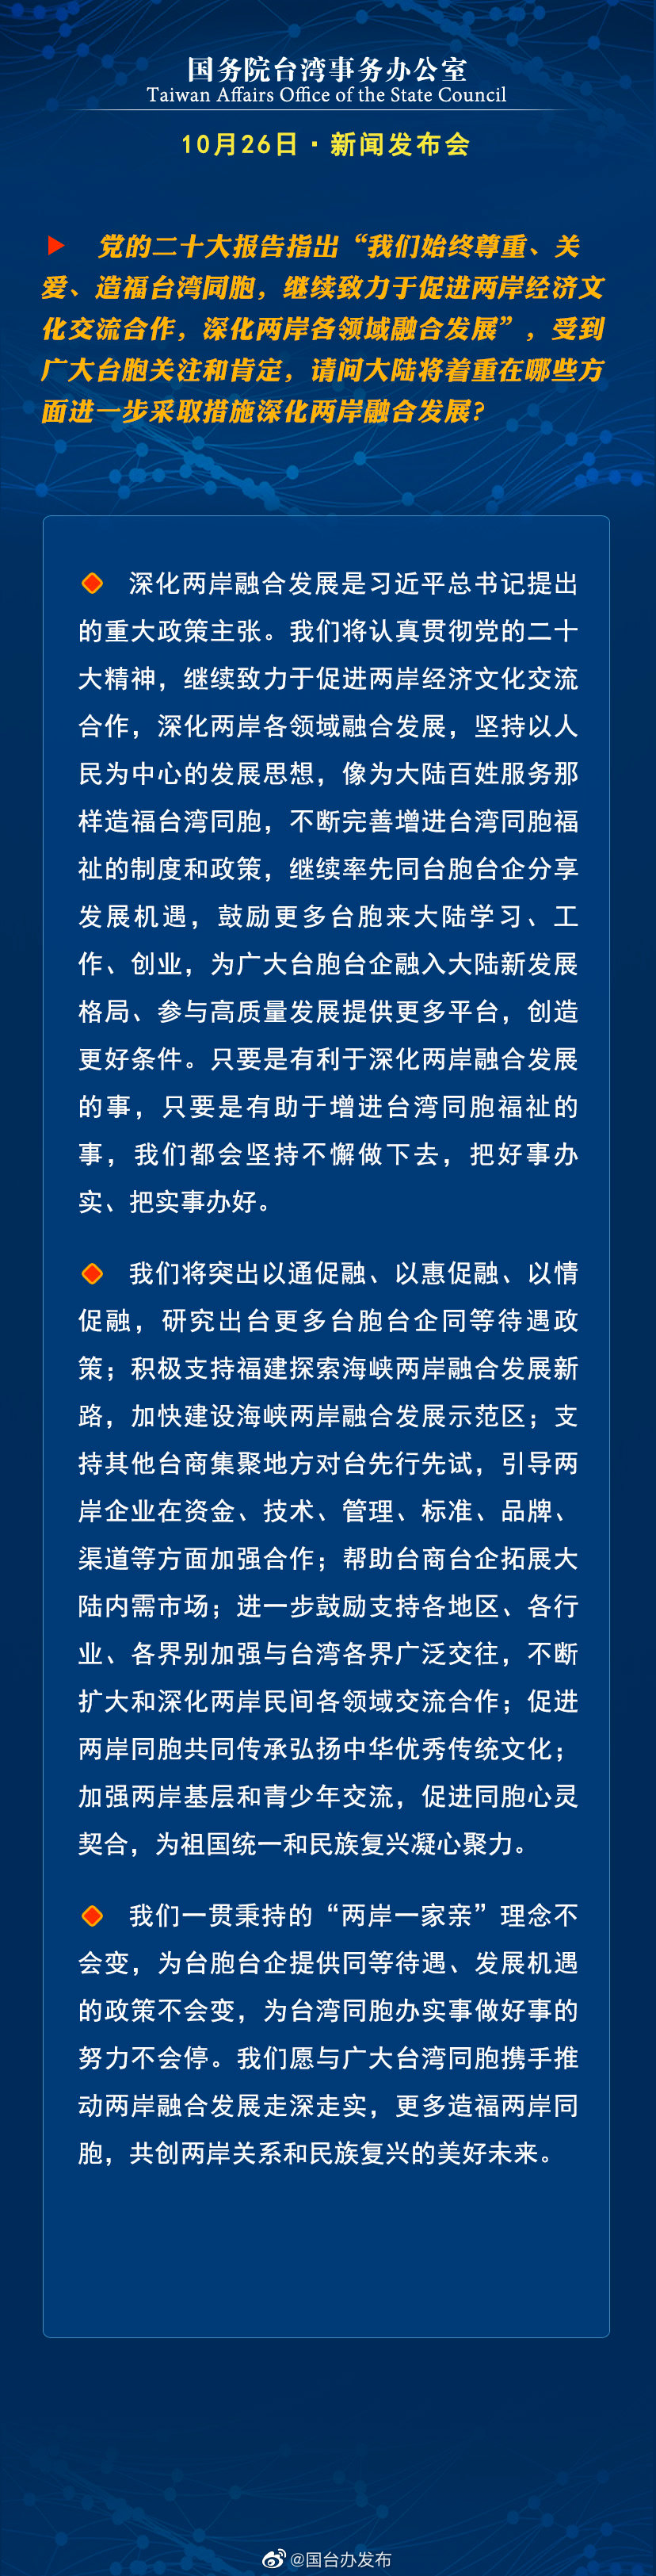 国务院台湾事务办公室10月26日·新闻发布会